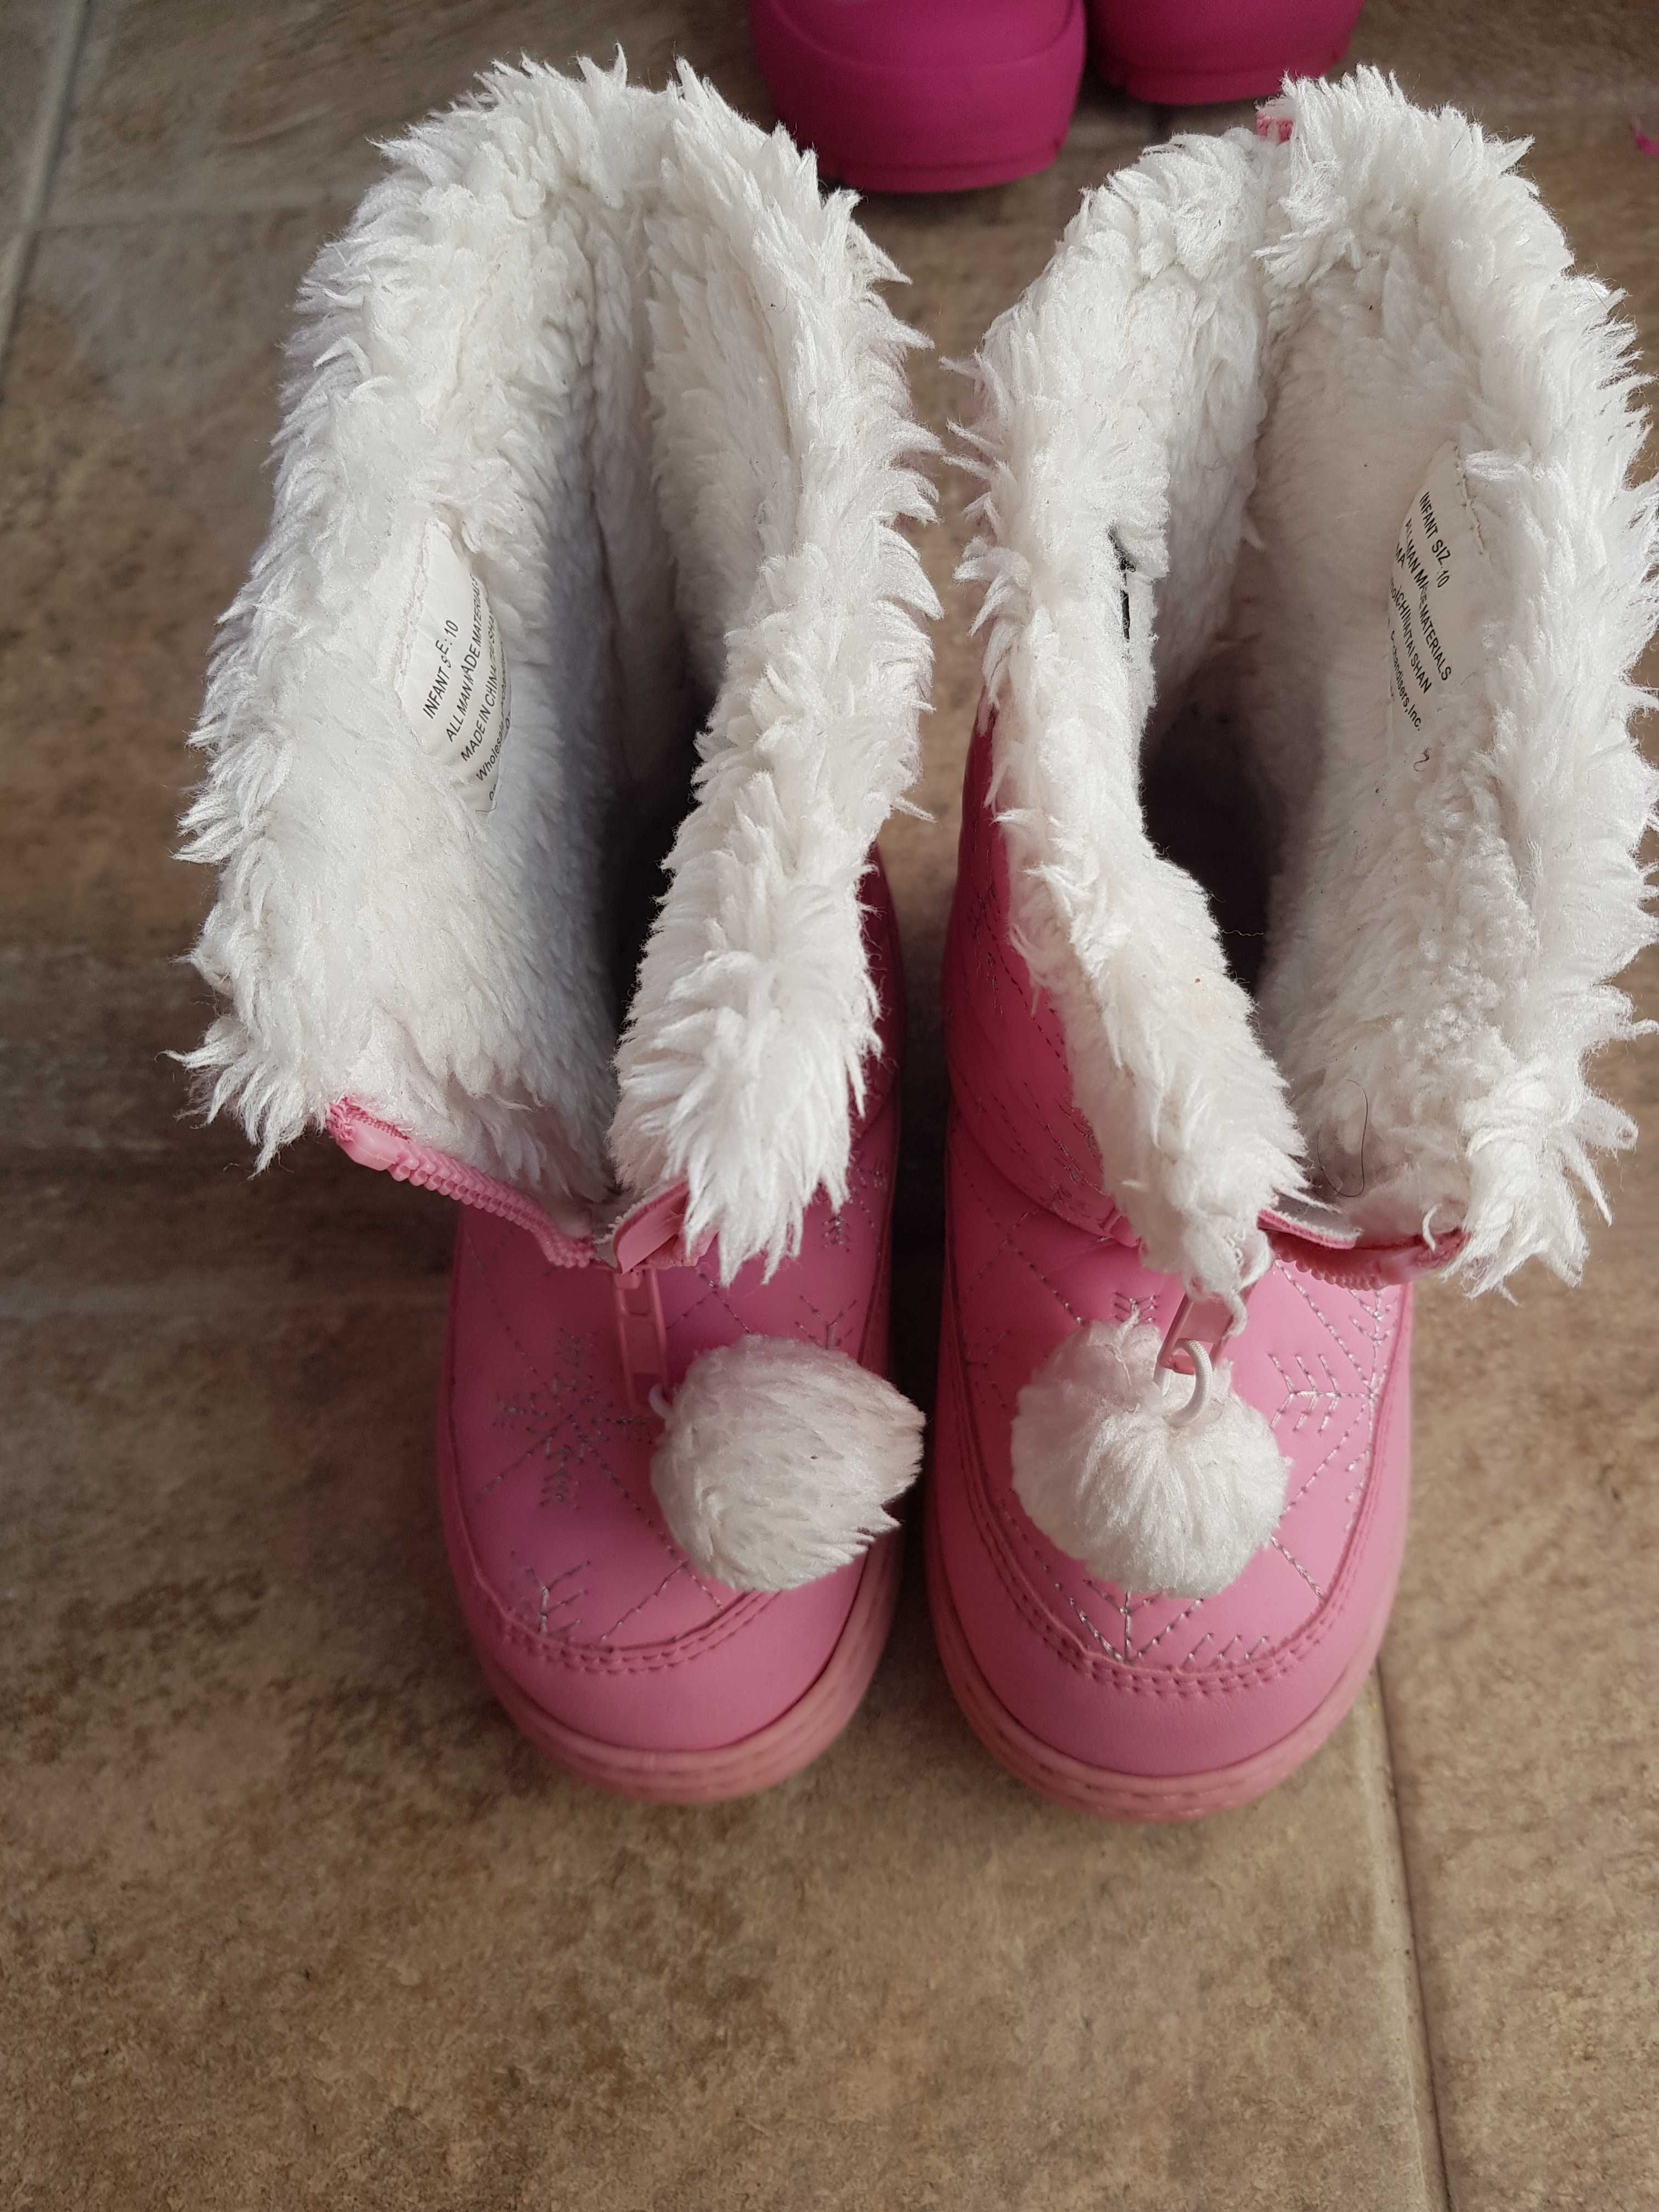 Намалени! Детски обувки за 4-5г момиче-Clarks, Nike, Crocs, Skechers.